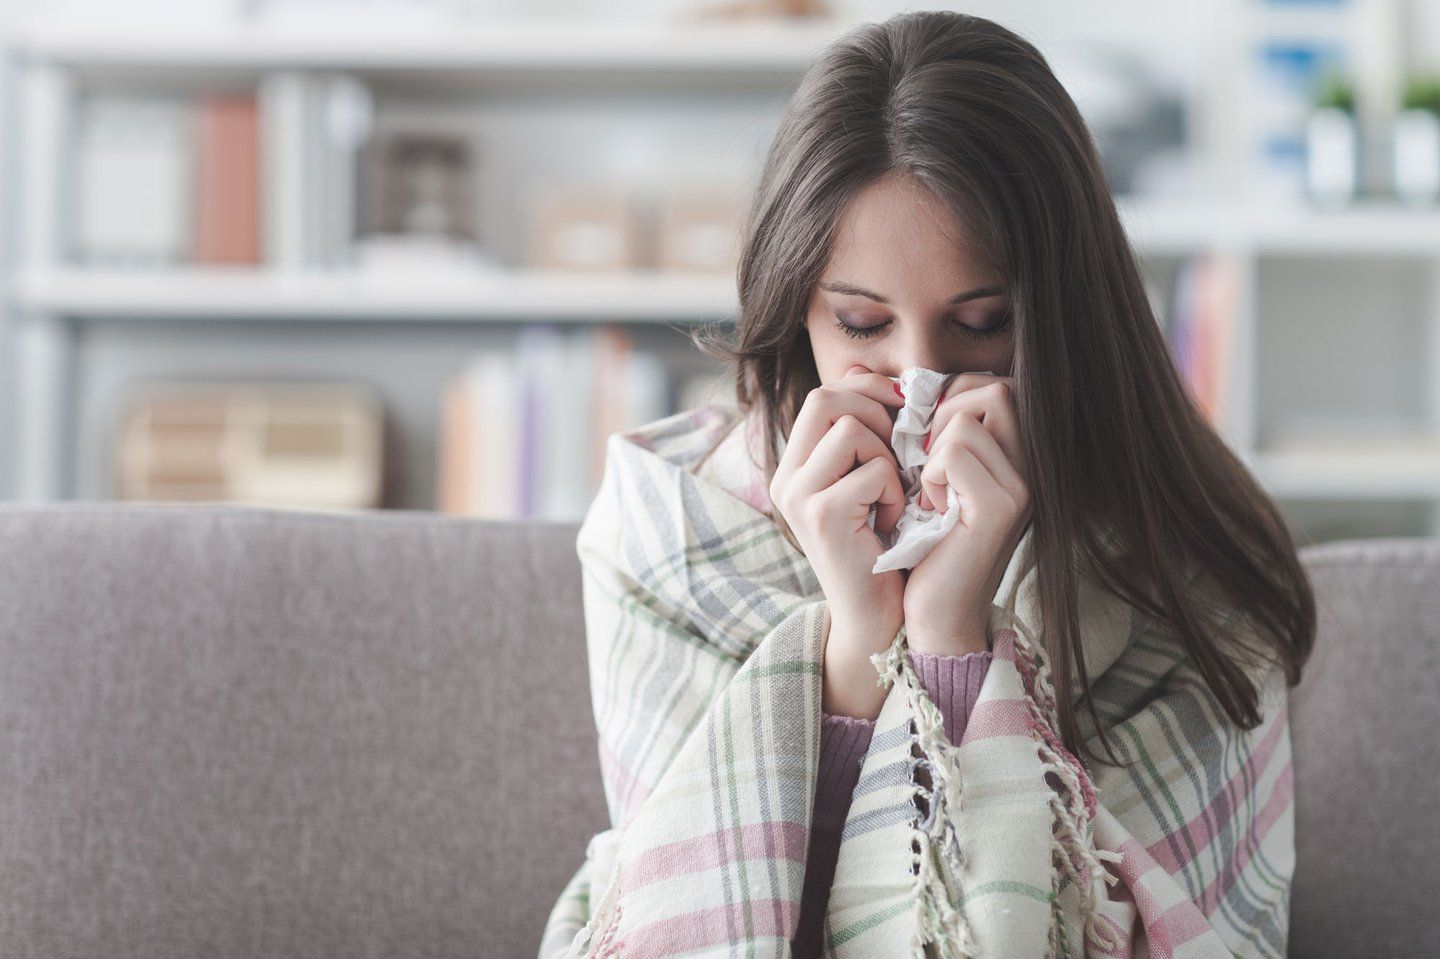   Nhiều bệnh nhân mắc COVID-19 có biểu hiện bị sốt, ho, khó thở...  